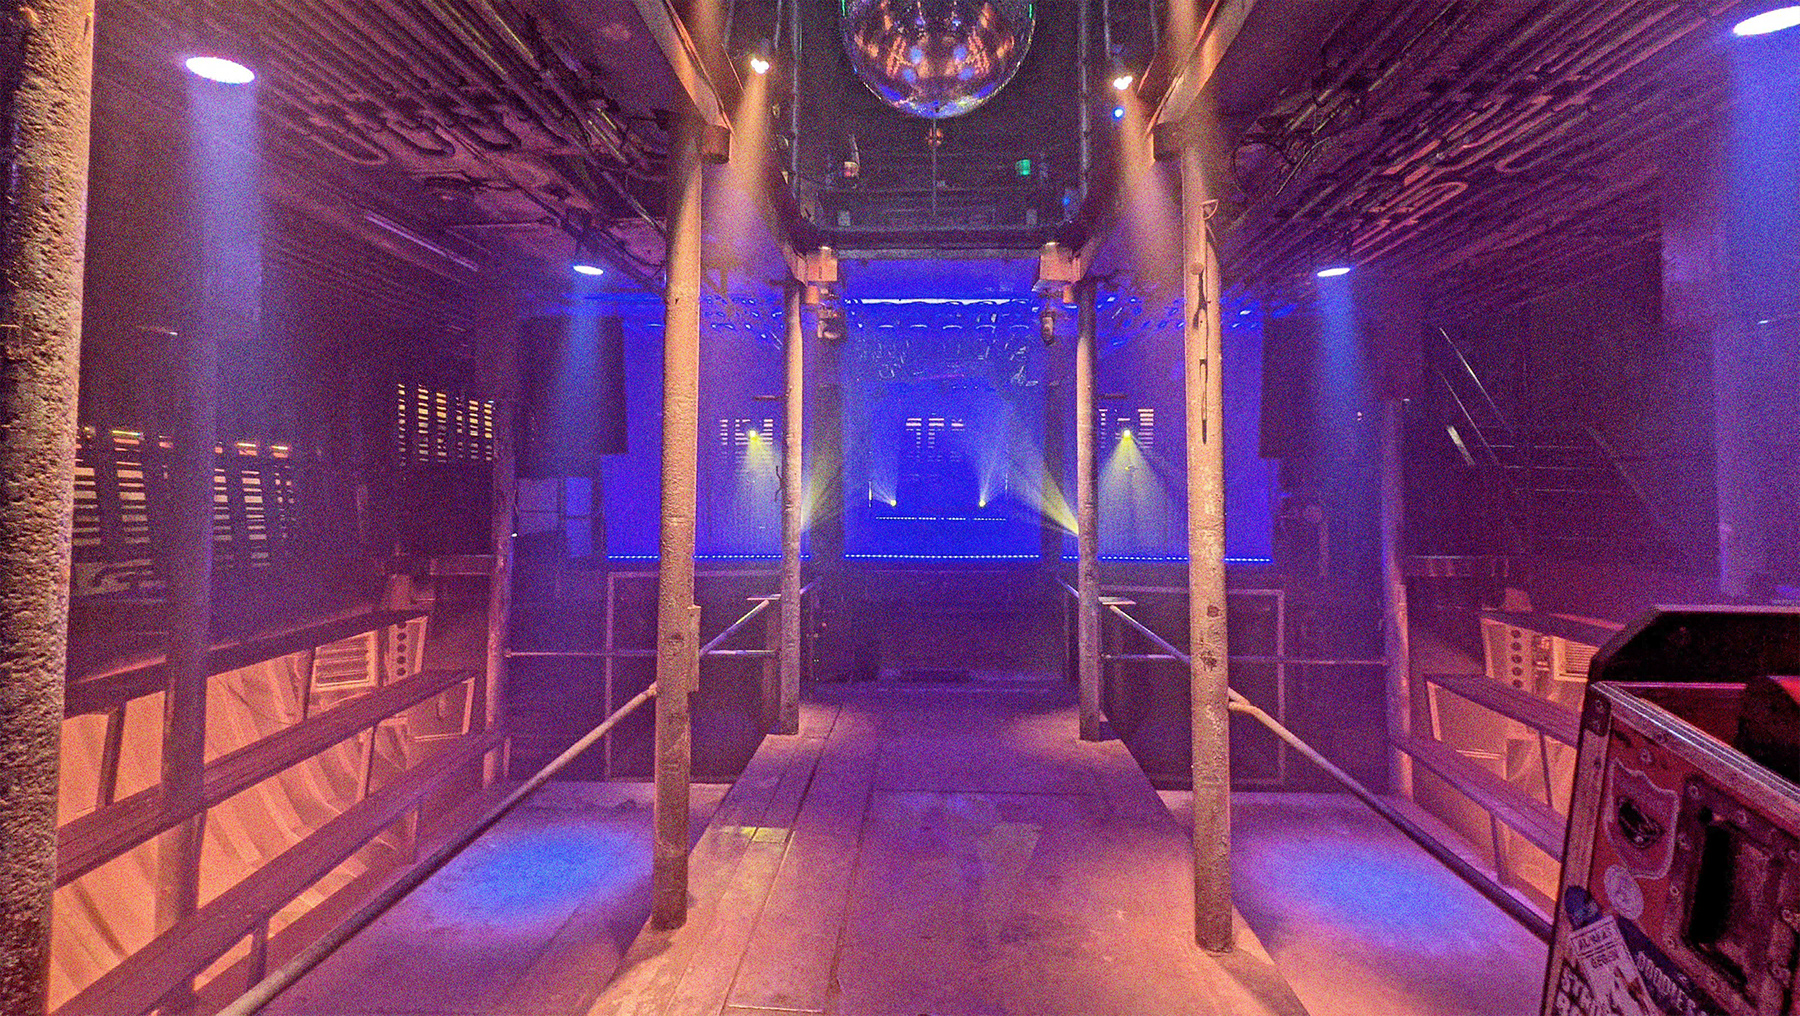 Der leere Laderaum 4 mit Blick frontal auf die Bühne. Die Tanzfläche befindet sich in der Mitte. An den Seiten links und rechts befinden sich Sitzbänke aus Holz. Scheinwerfer beleuchten den Raum in blau und lila.